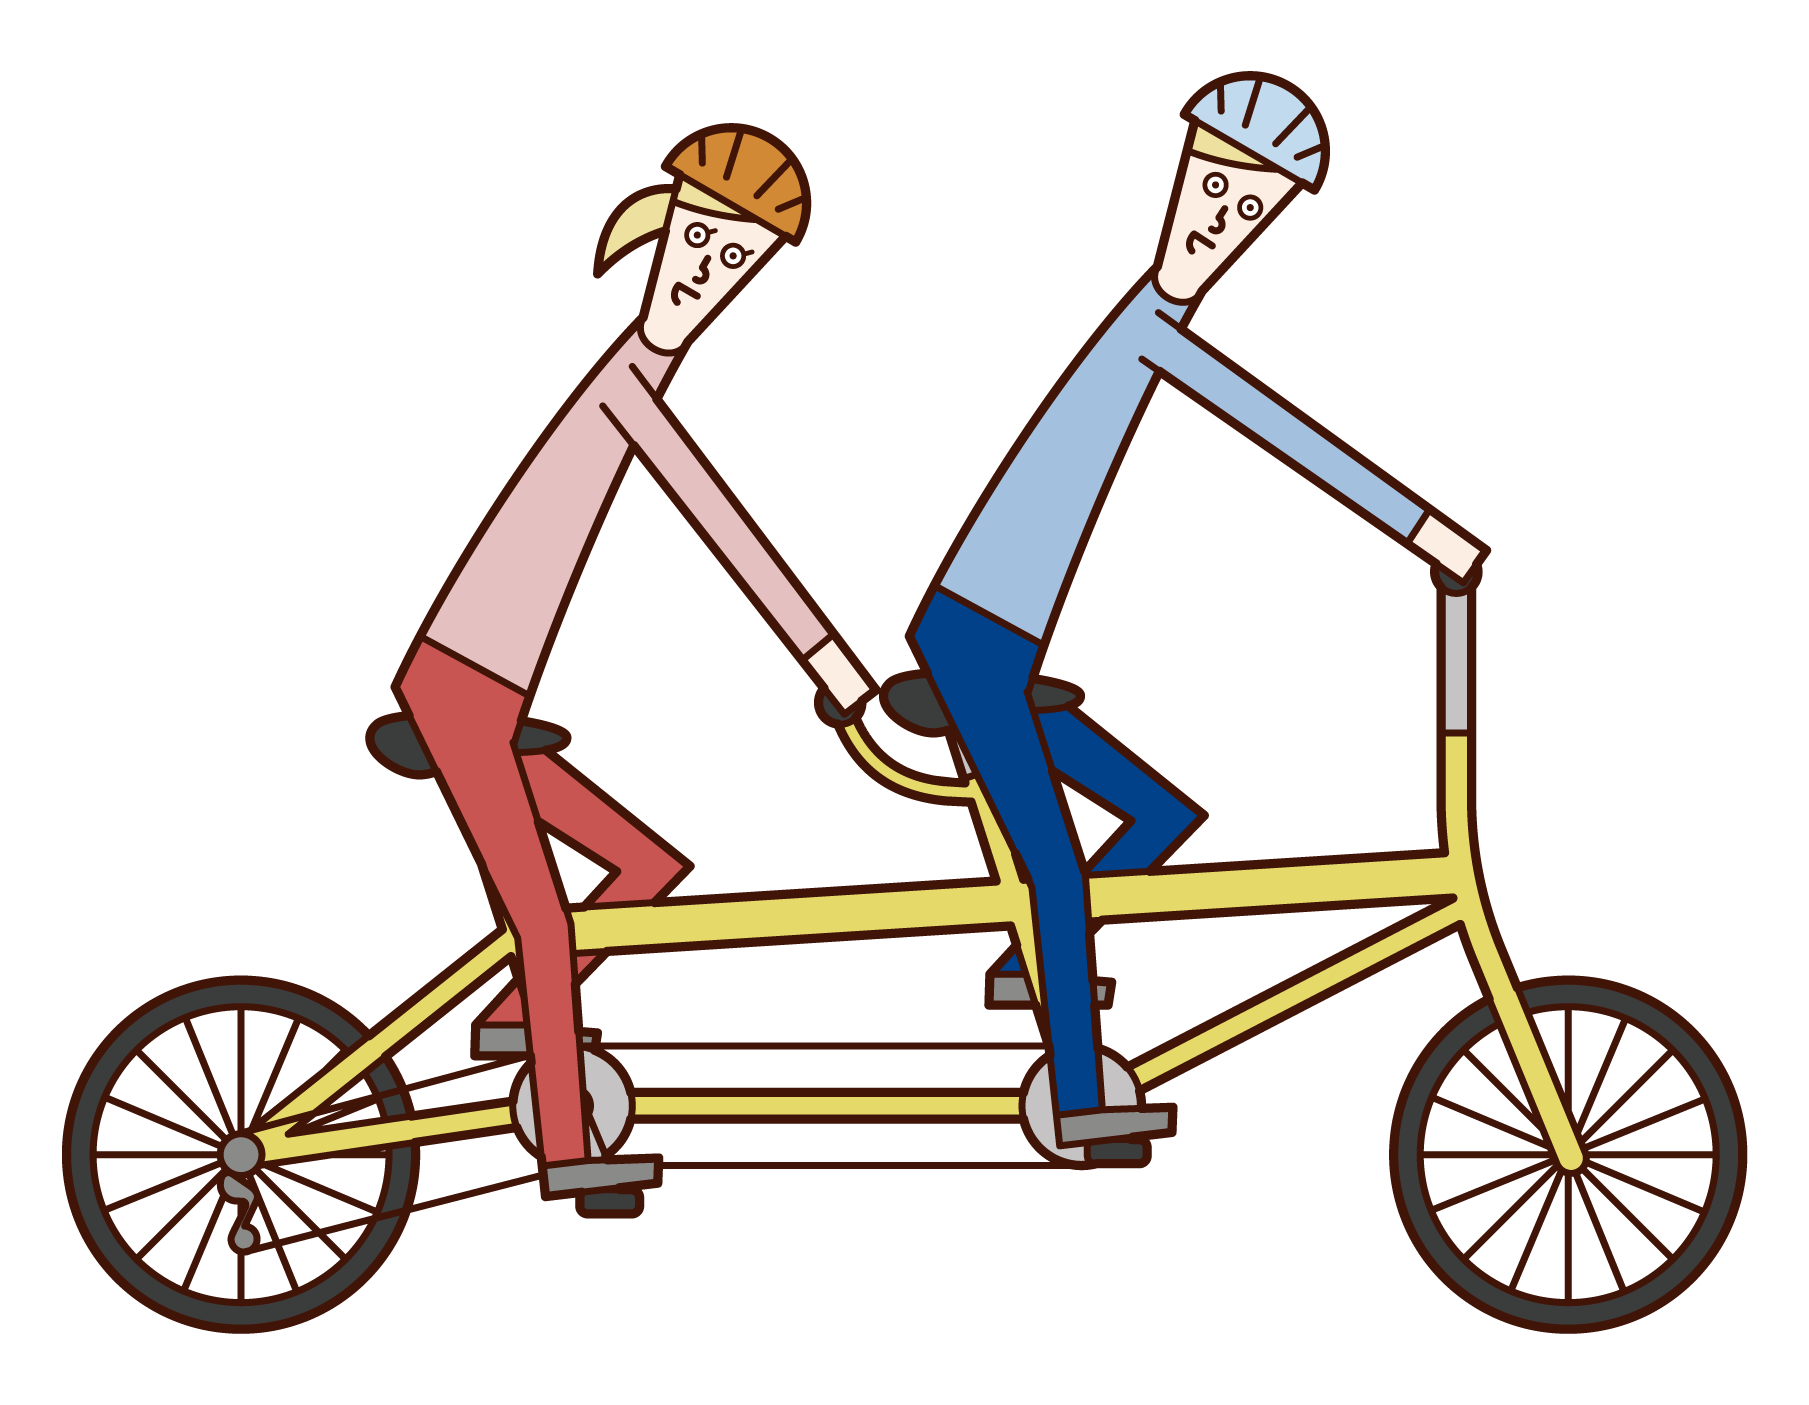 タンデム自転車に乗る人たちのイラスト フリーイラスト素材 Kukukeke ククケケ